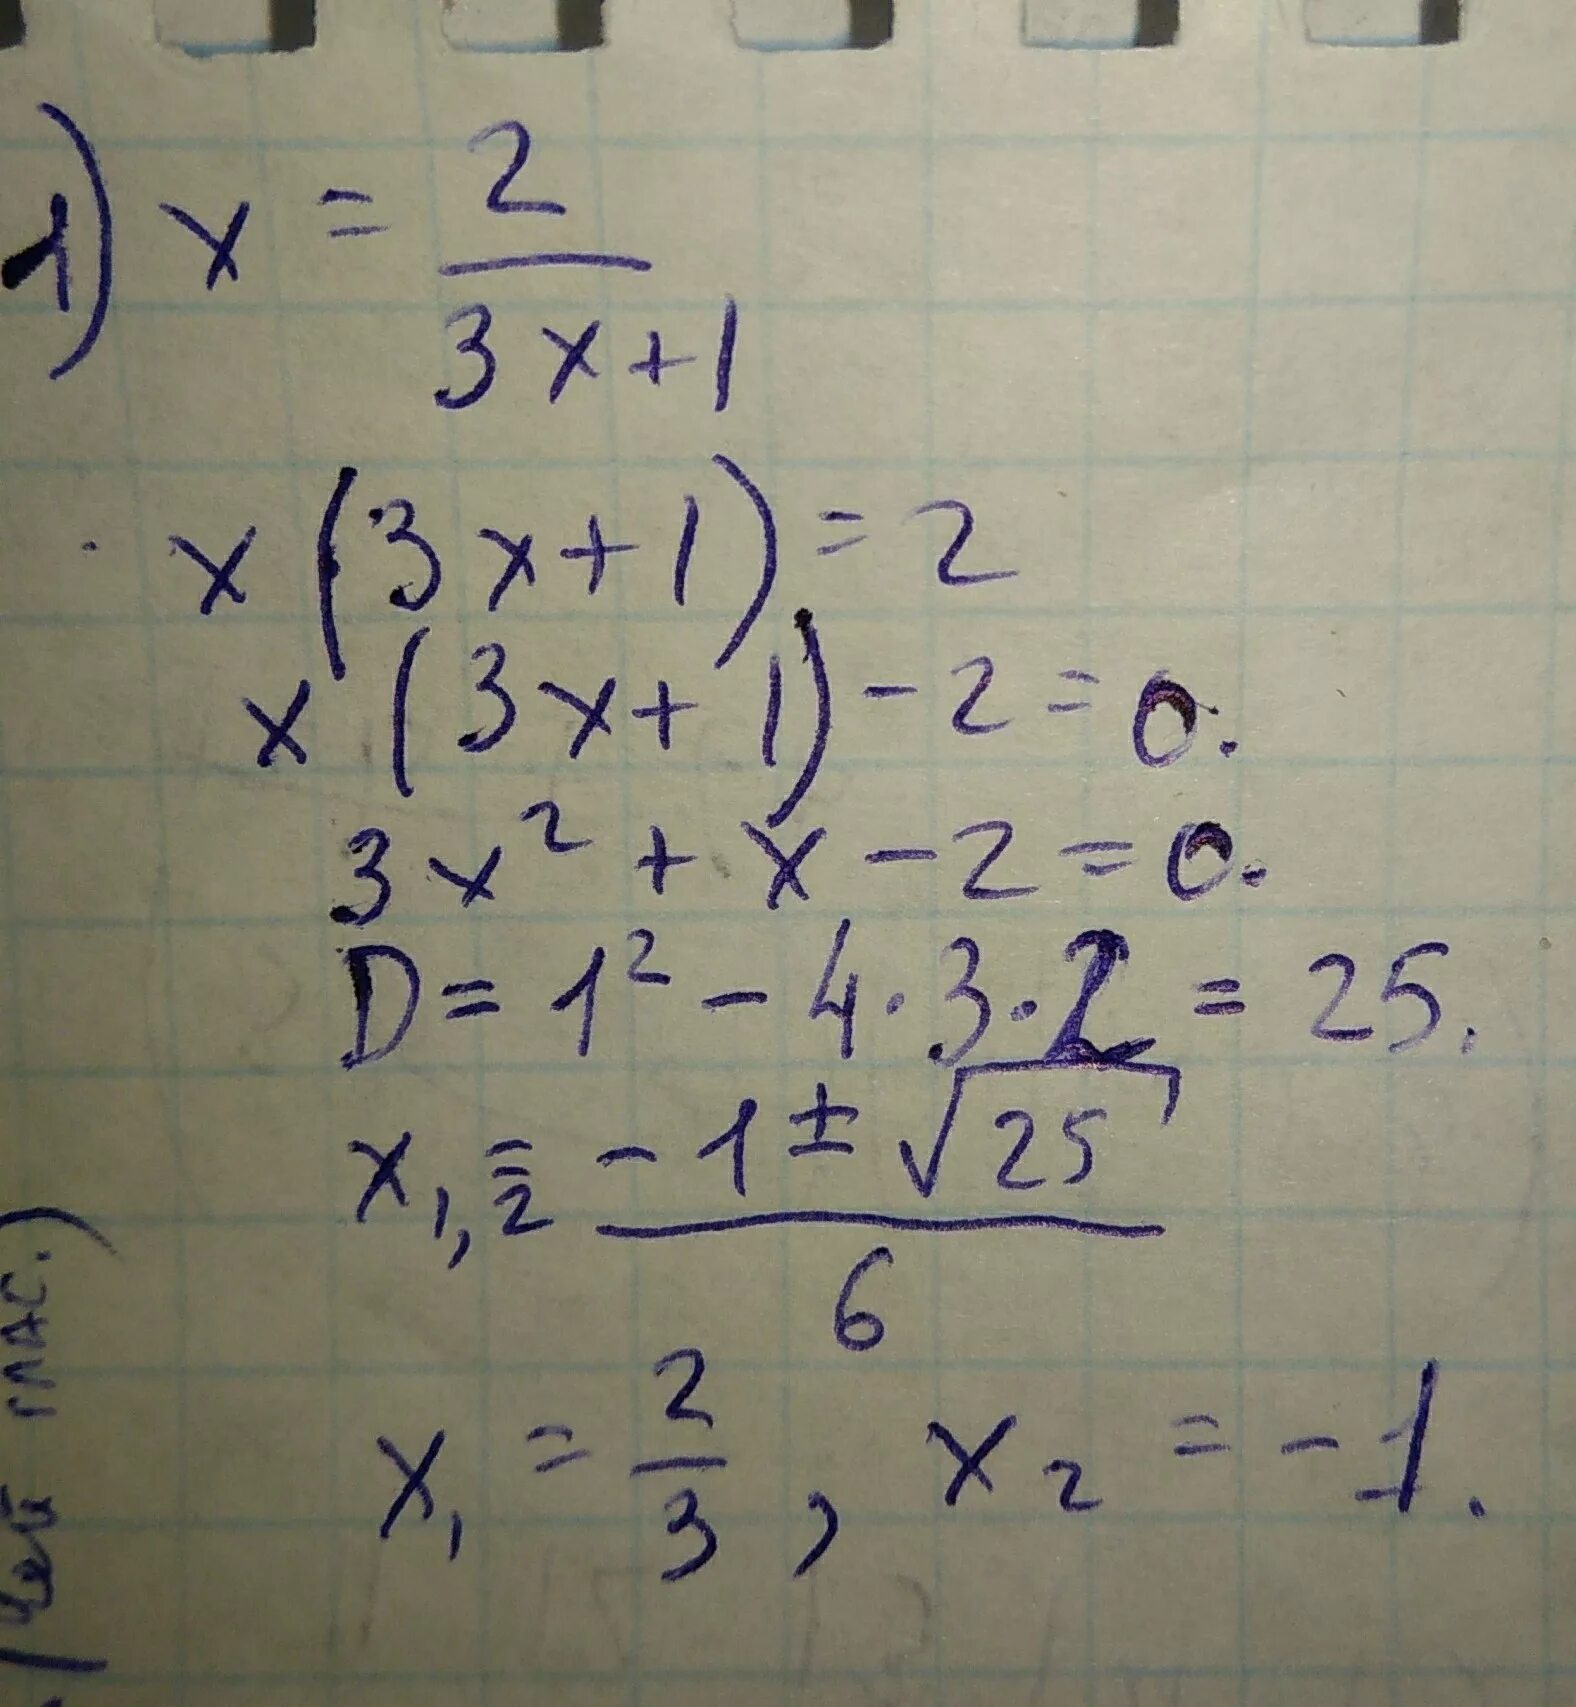 1 2x 3 2. (1/3)^4x-4×(1/3)^2-3x=1 решение. 4(3x-2) -2(-5 y-1) решение. 1/3×X+1/4×x1/5×x=1/5 ответ. 2x-5=x-2 решение.